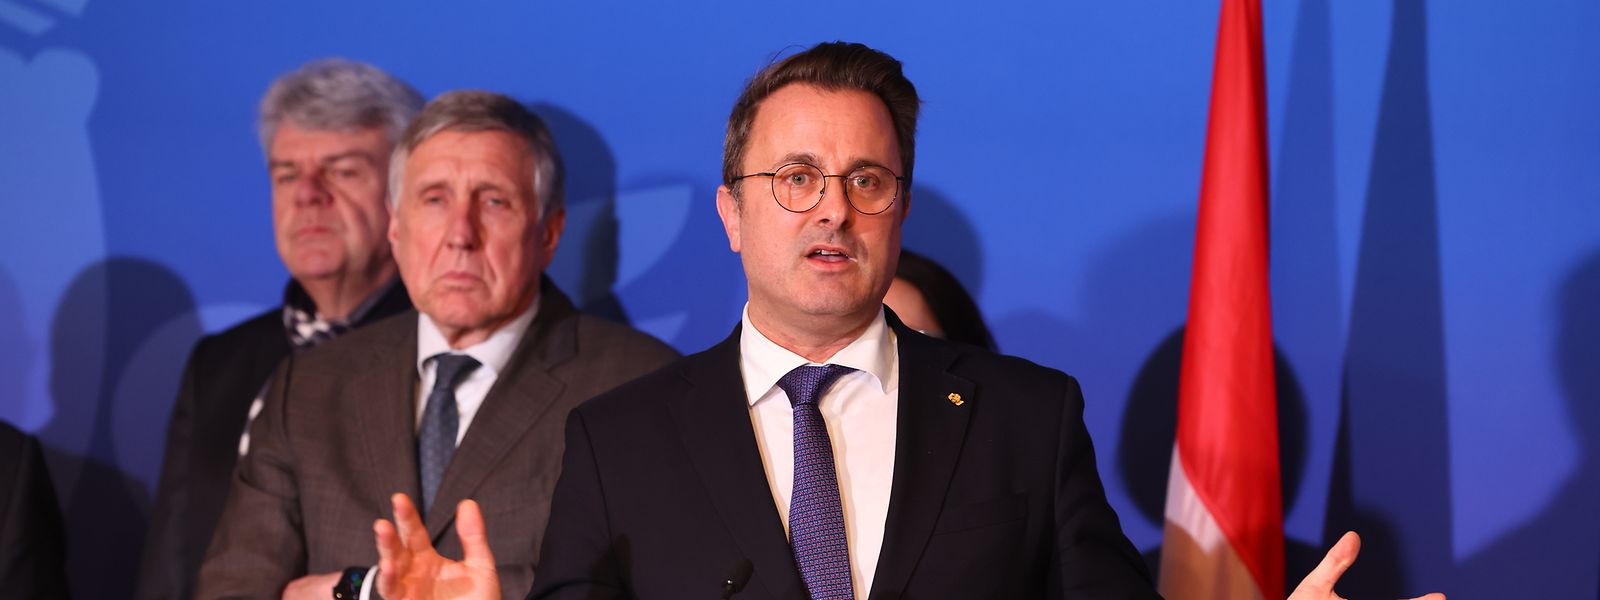 Premierminister Xavier Bettel verkündete am Freitagabend die Beschlüsse der Tripartite.